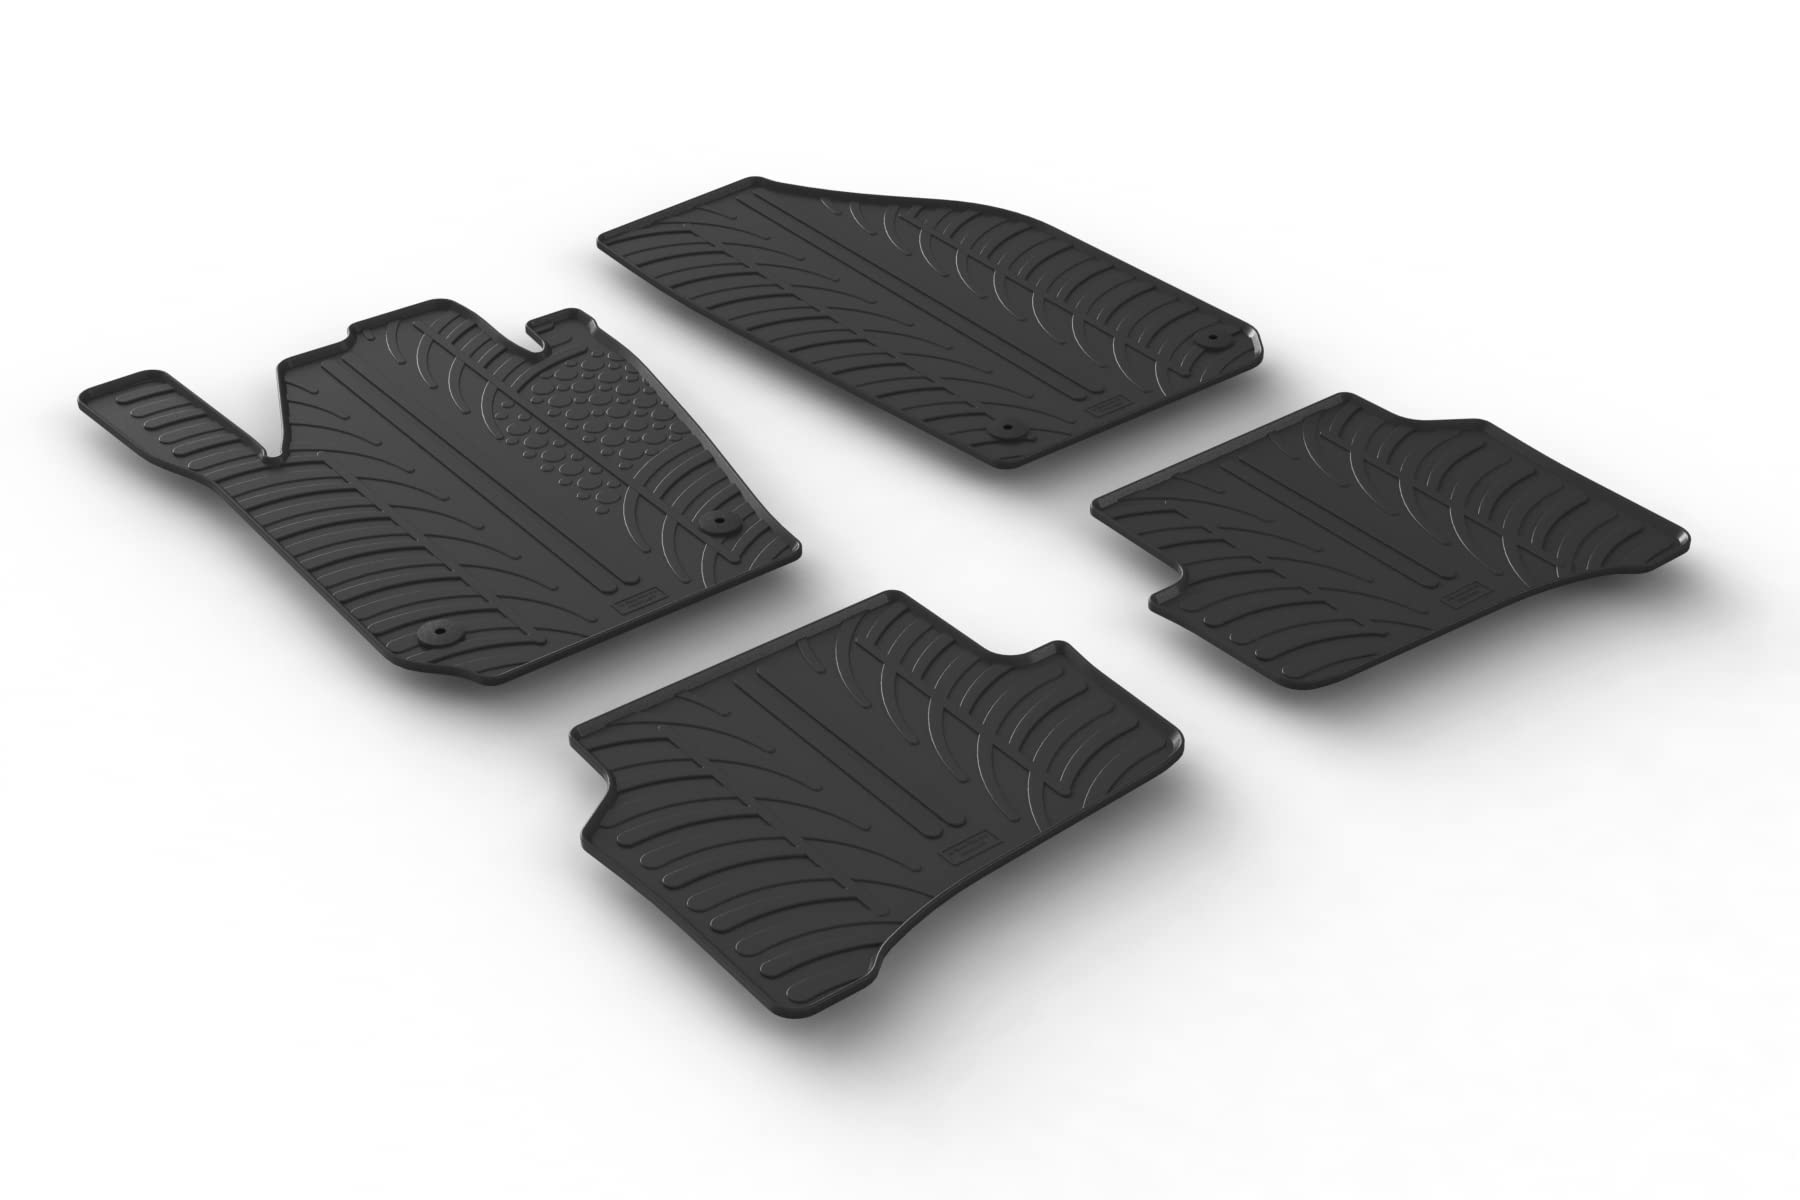 AROBA GL0473 Design Gummi Fußmatten kompatibel mit Skoda Fabia Combi (Kombi) BJ. 02.2015-11.2021 erhöhter Rand 4 TLG Farbe Schwarz Gummimatten Automatten passgenau von AROBA